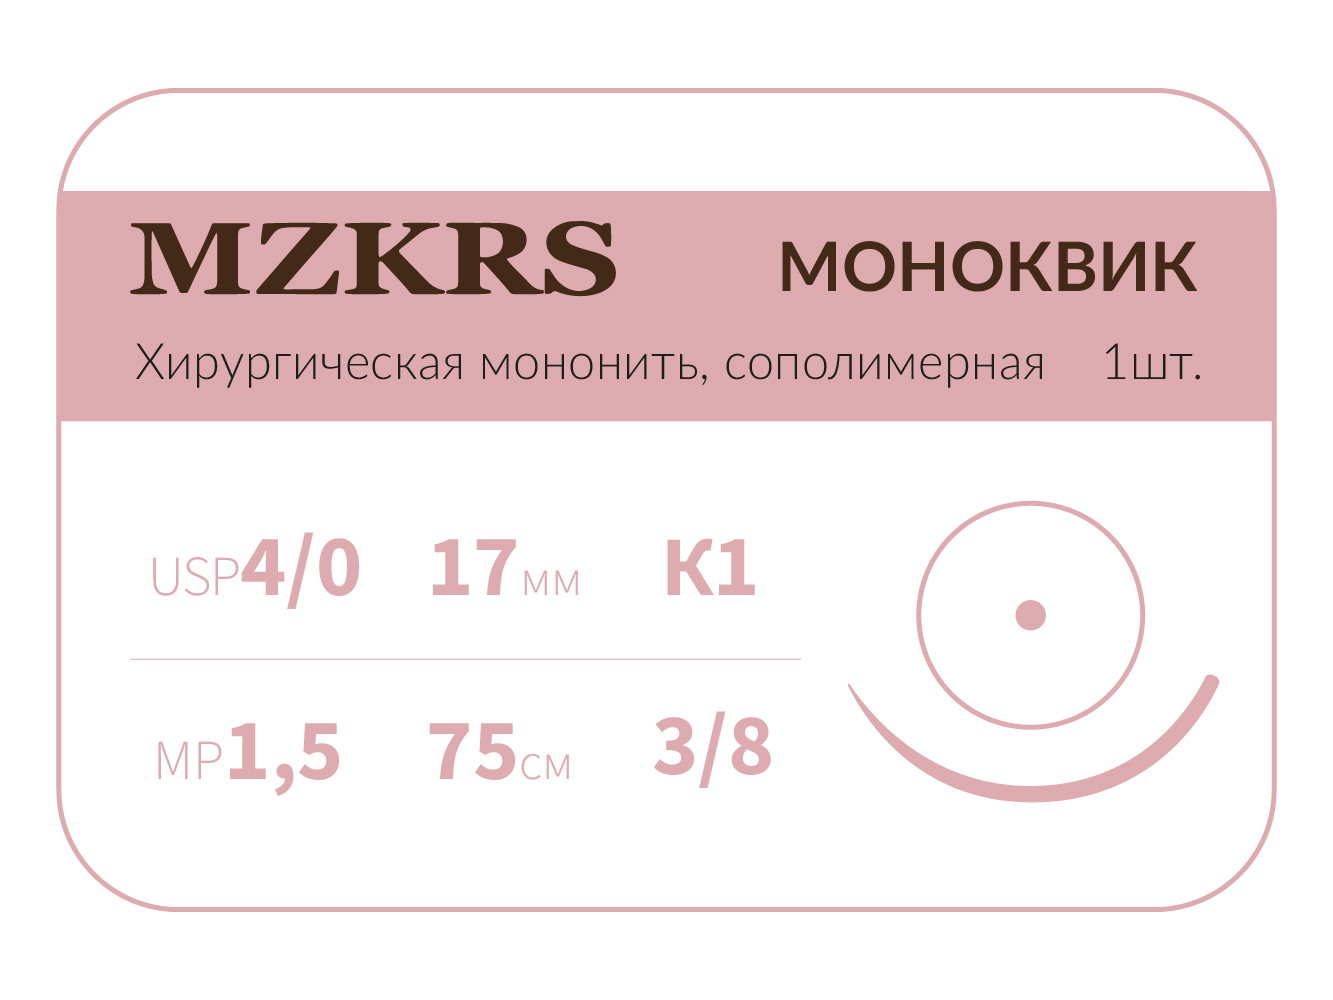 1738К1 Premium-4/0 (1,5)75 МОНК МОНОКВИК хирургическая мононить, сополимерная, MZKRS (Россия)